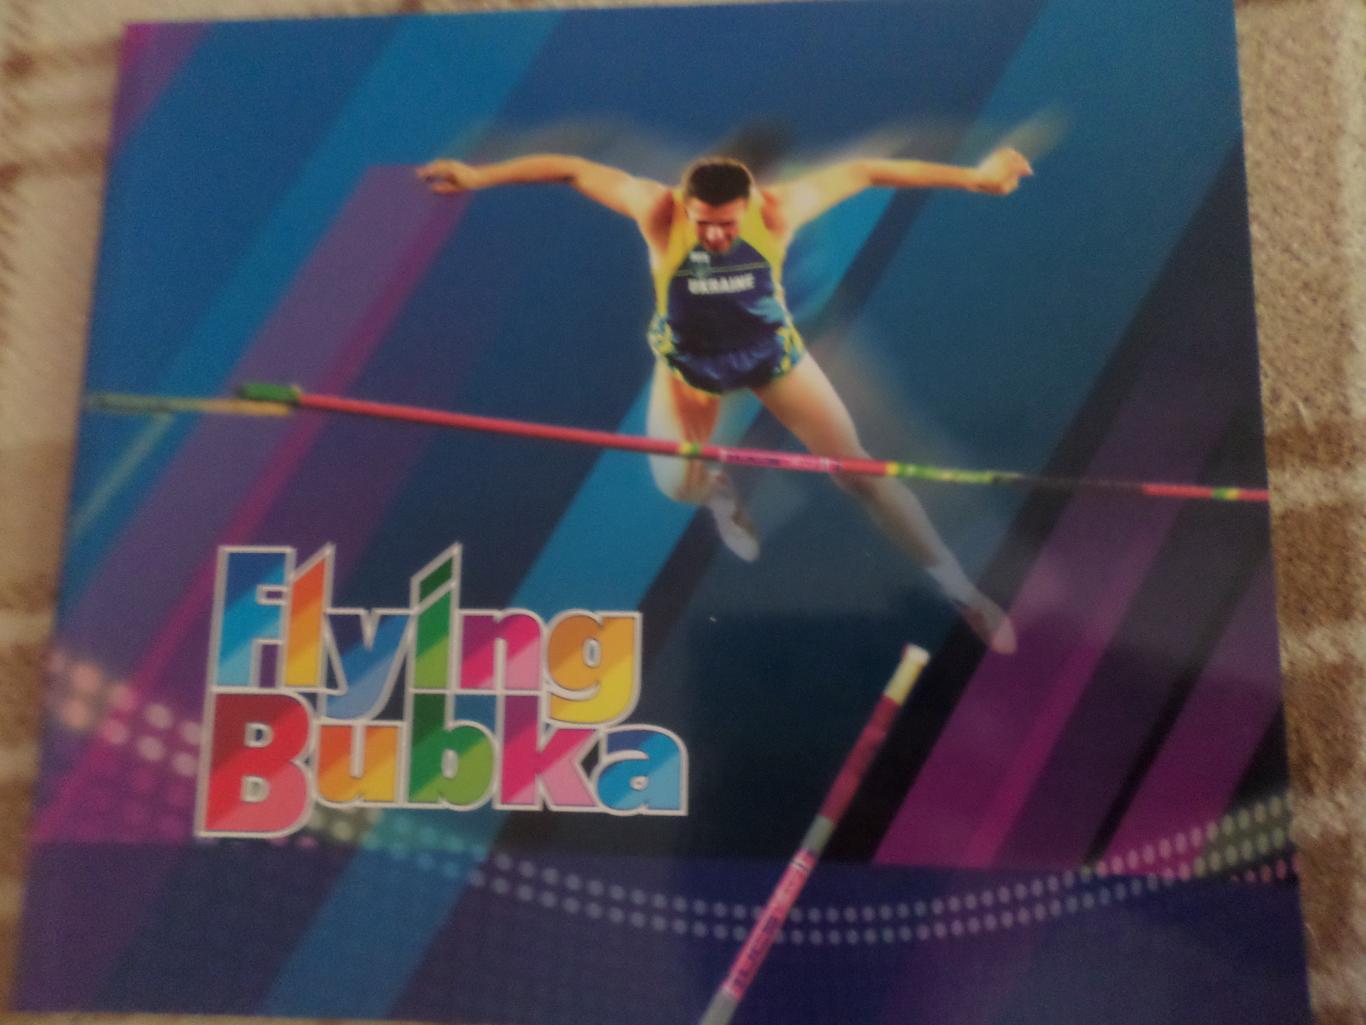 Flying Bubka Летающий Бубка альбом на английском языке